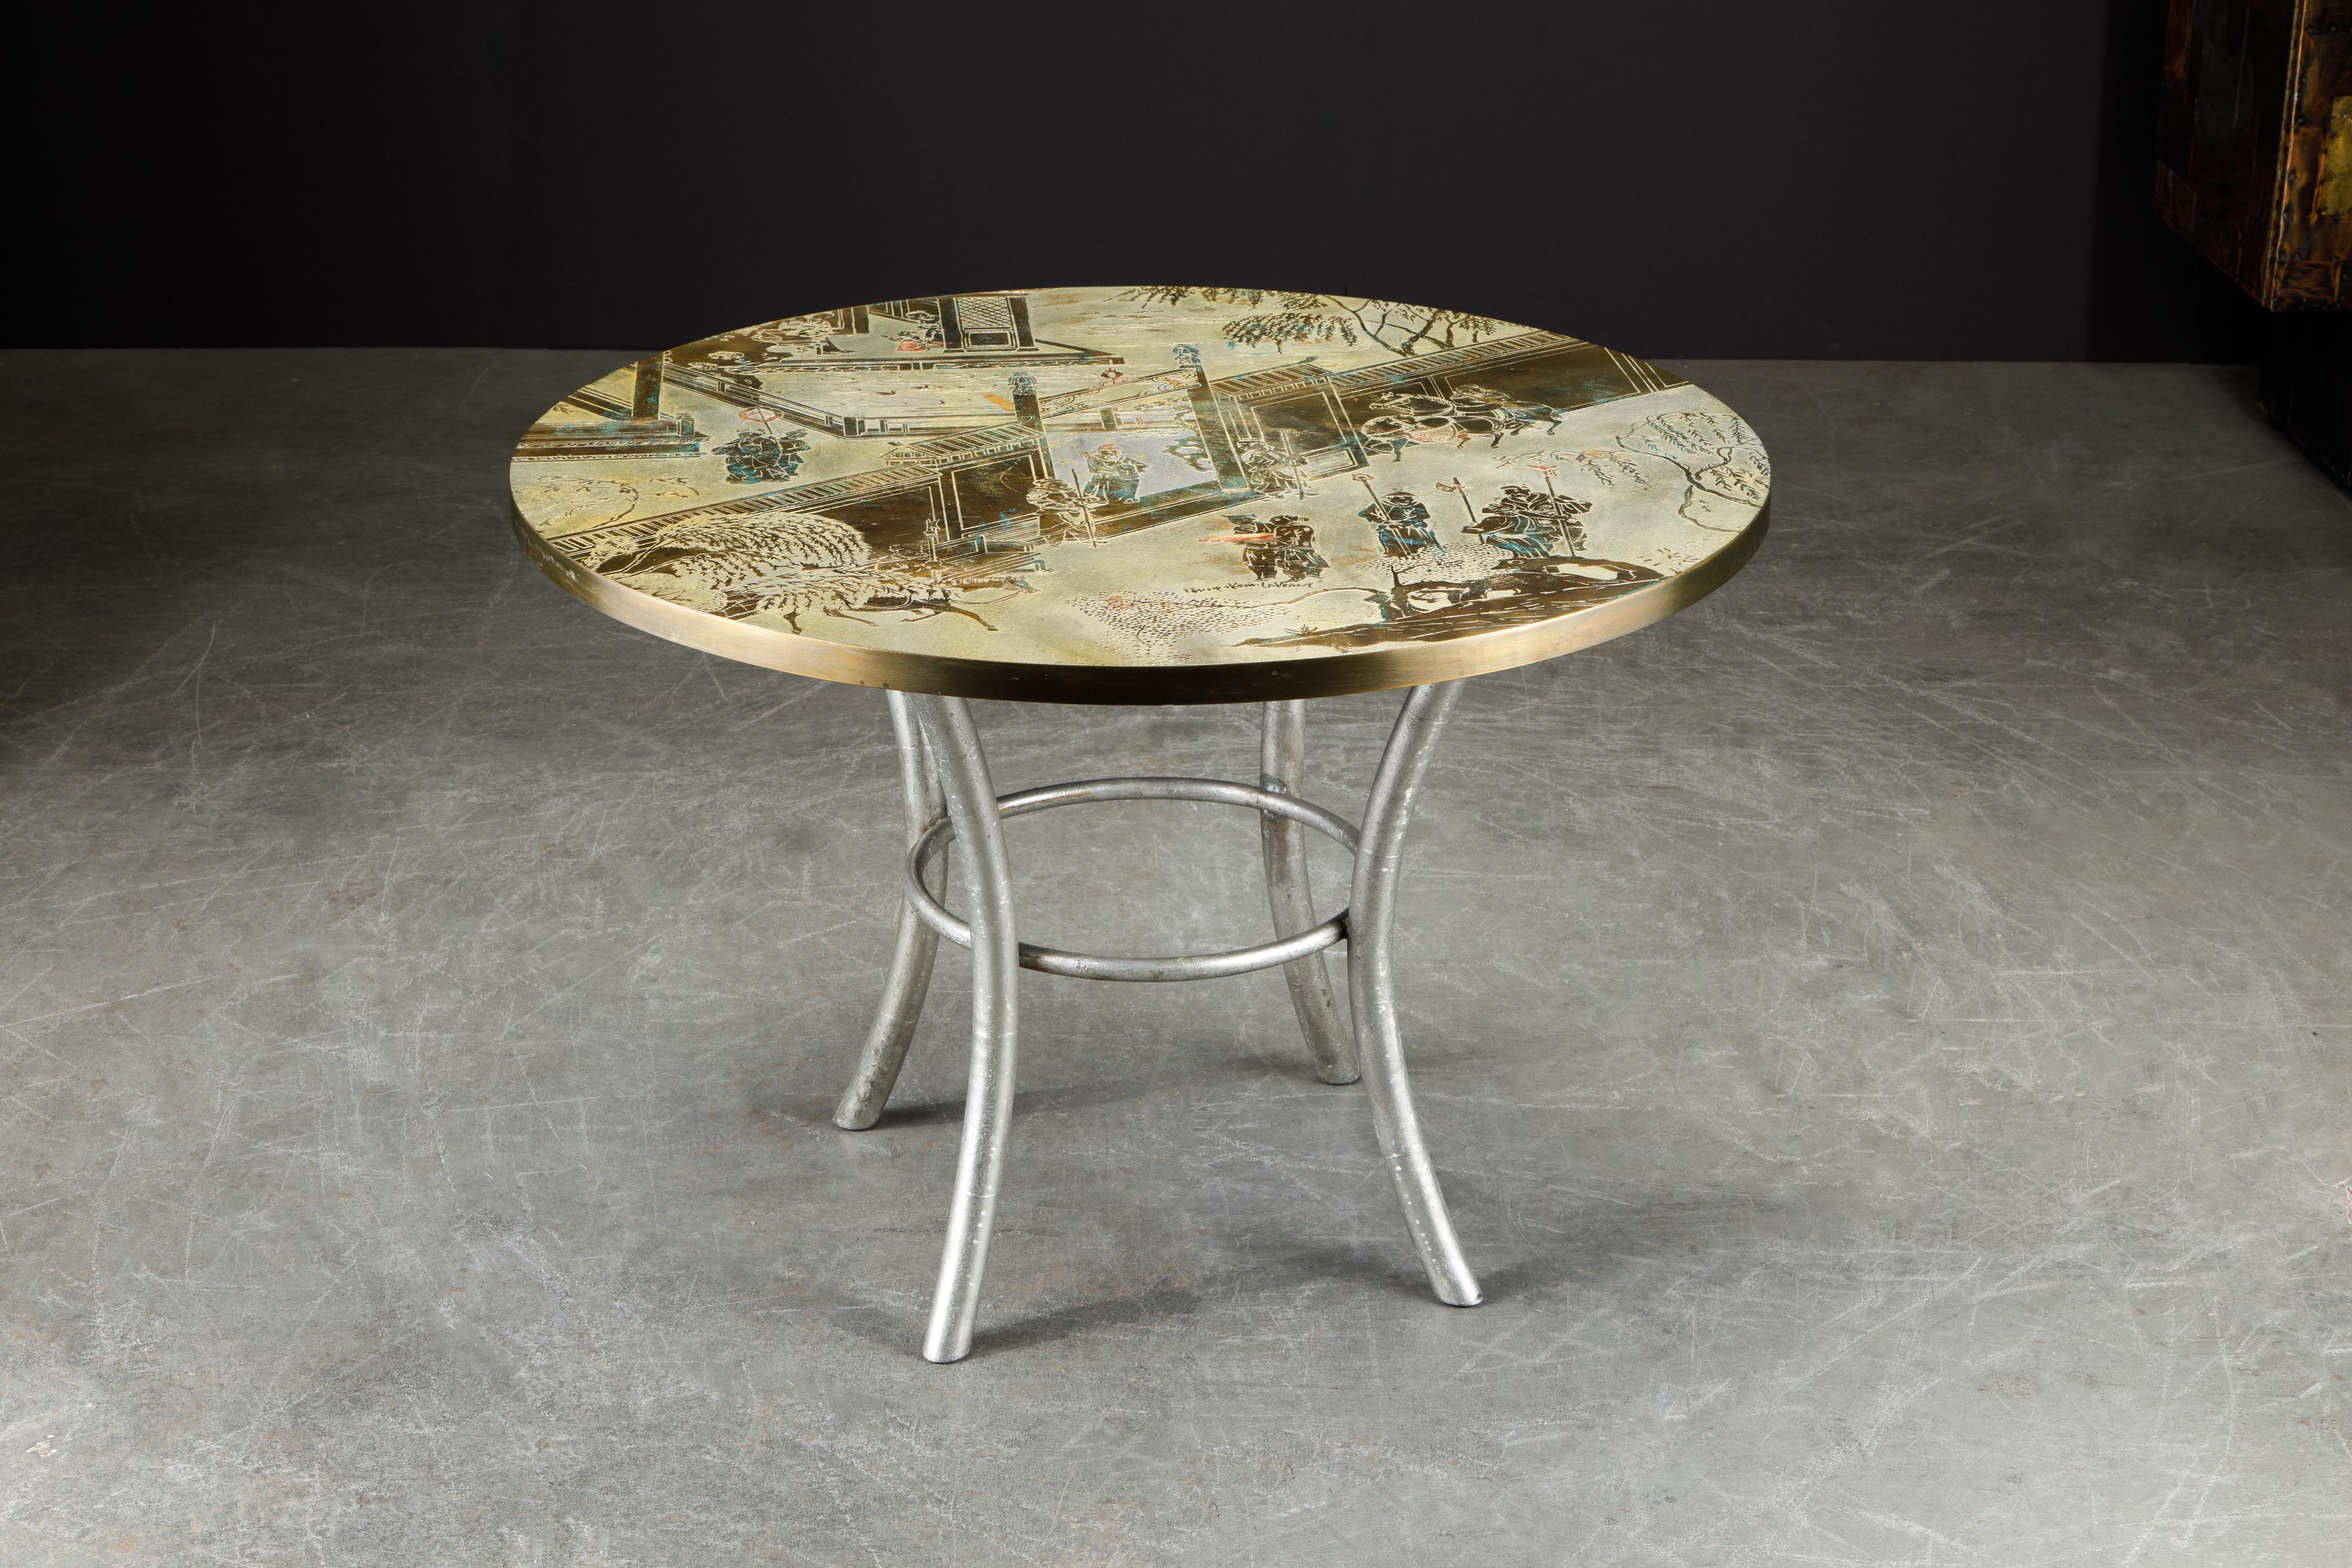 Polychromé Philip & Table de jeu Kelvin LaVerne Special 'Chan' en bronze:: circa 1965:: signé